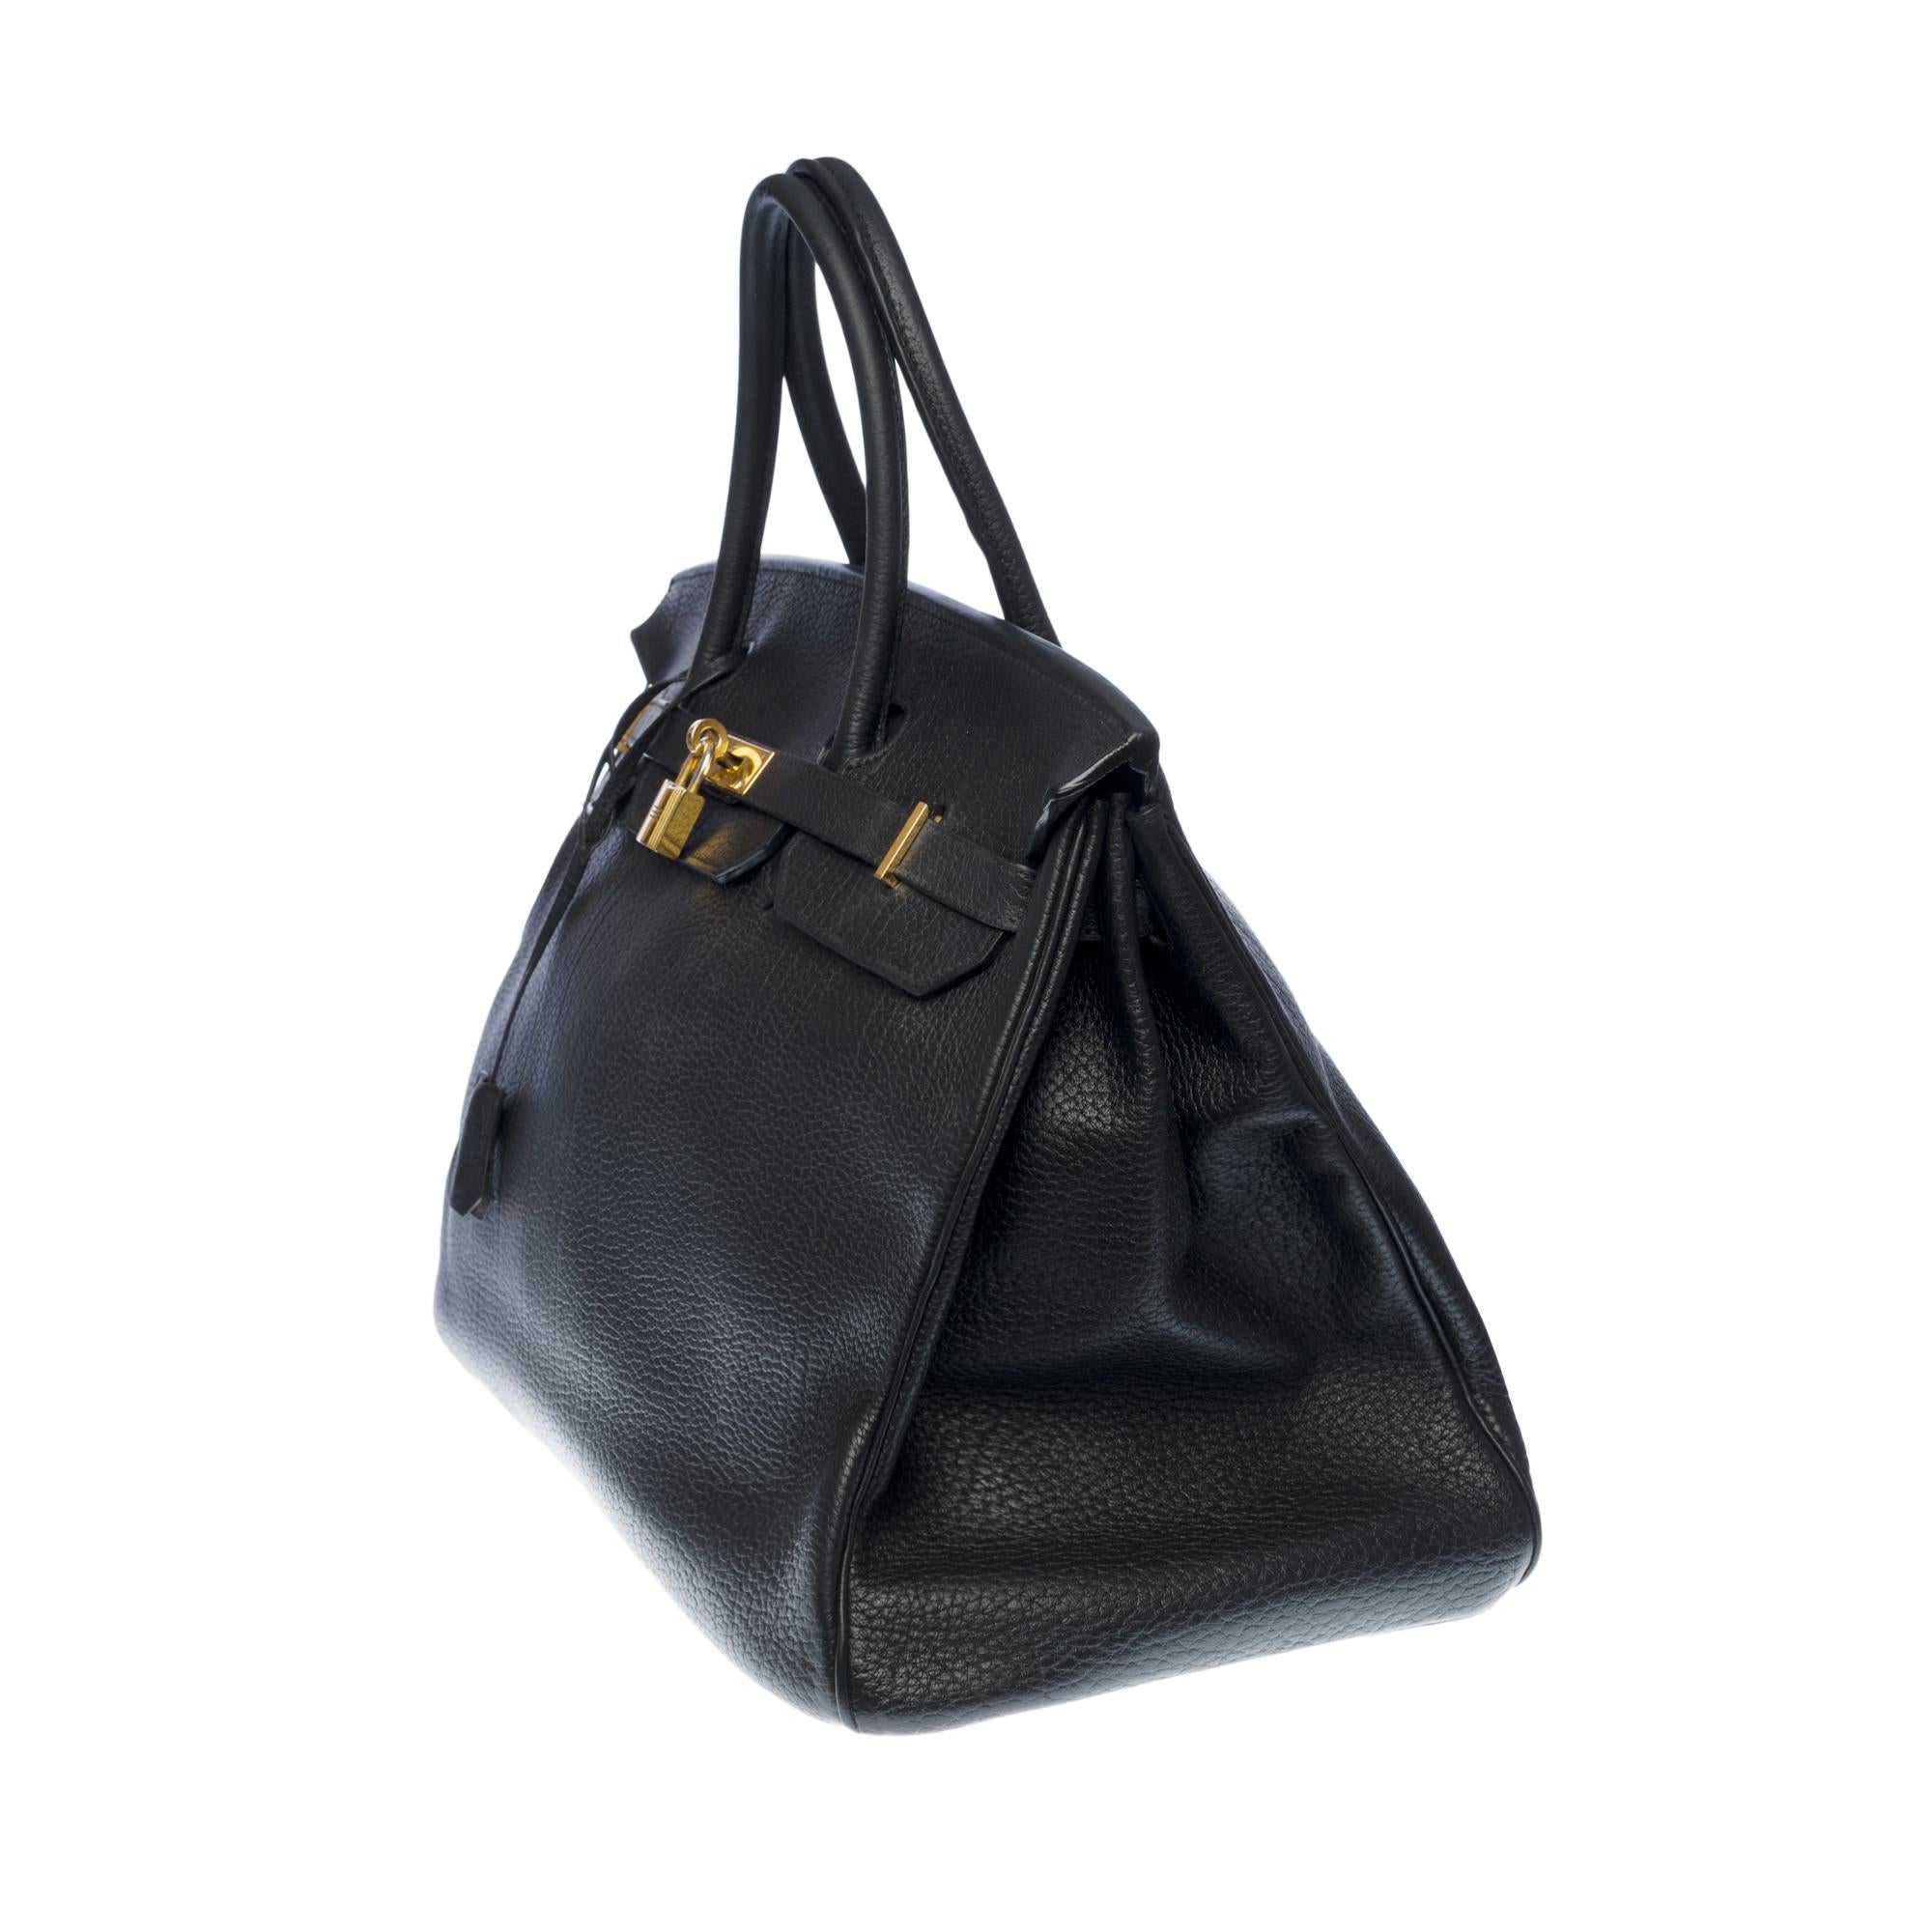 Stunning Hermes Birkin 40cm handbag in Black Togo leather, GHW In Good Condition In Paris, IDF